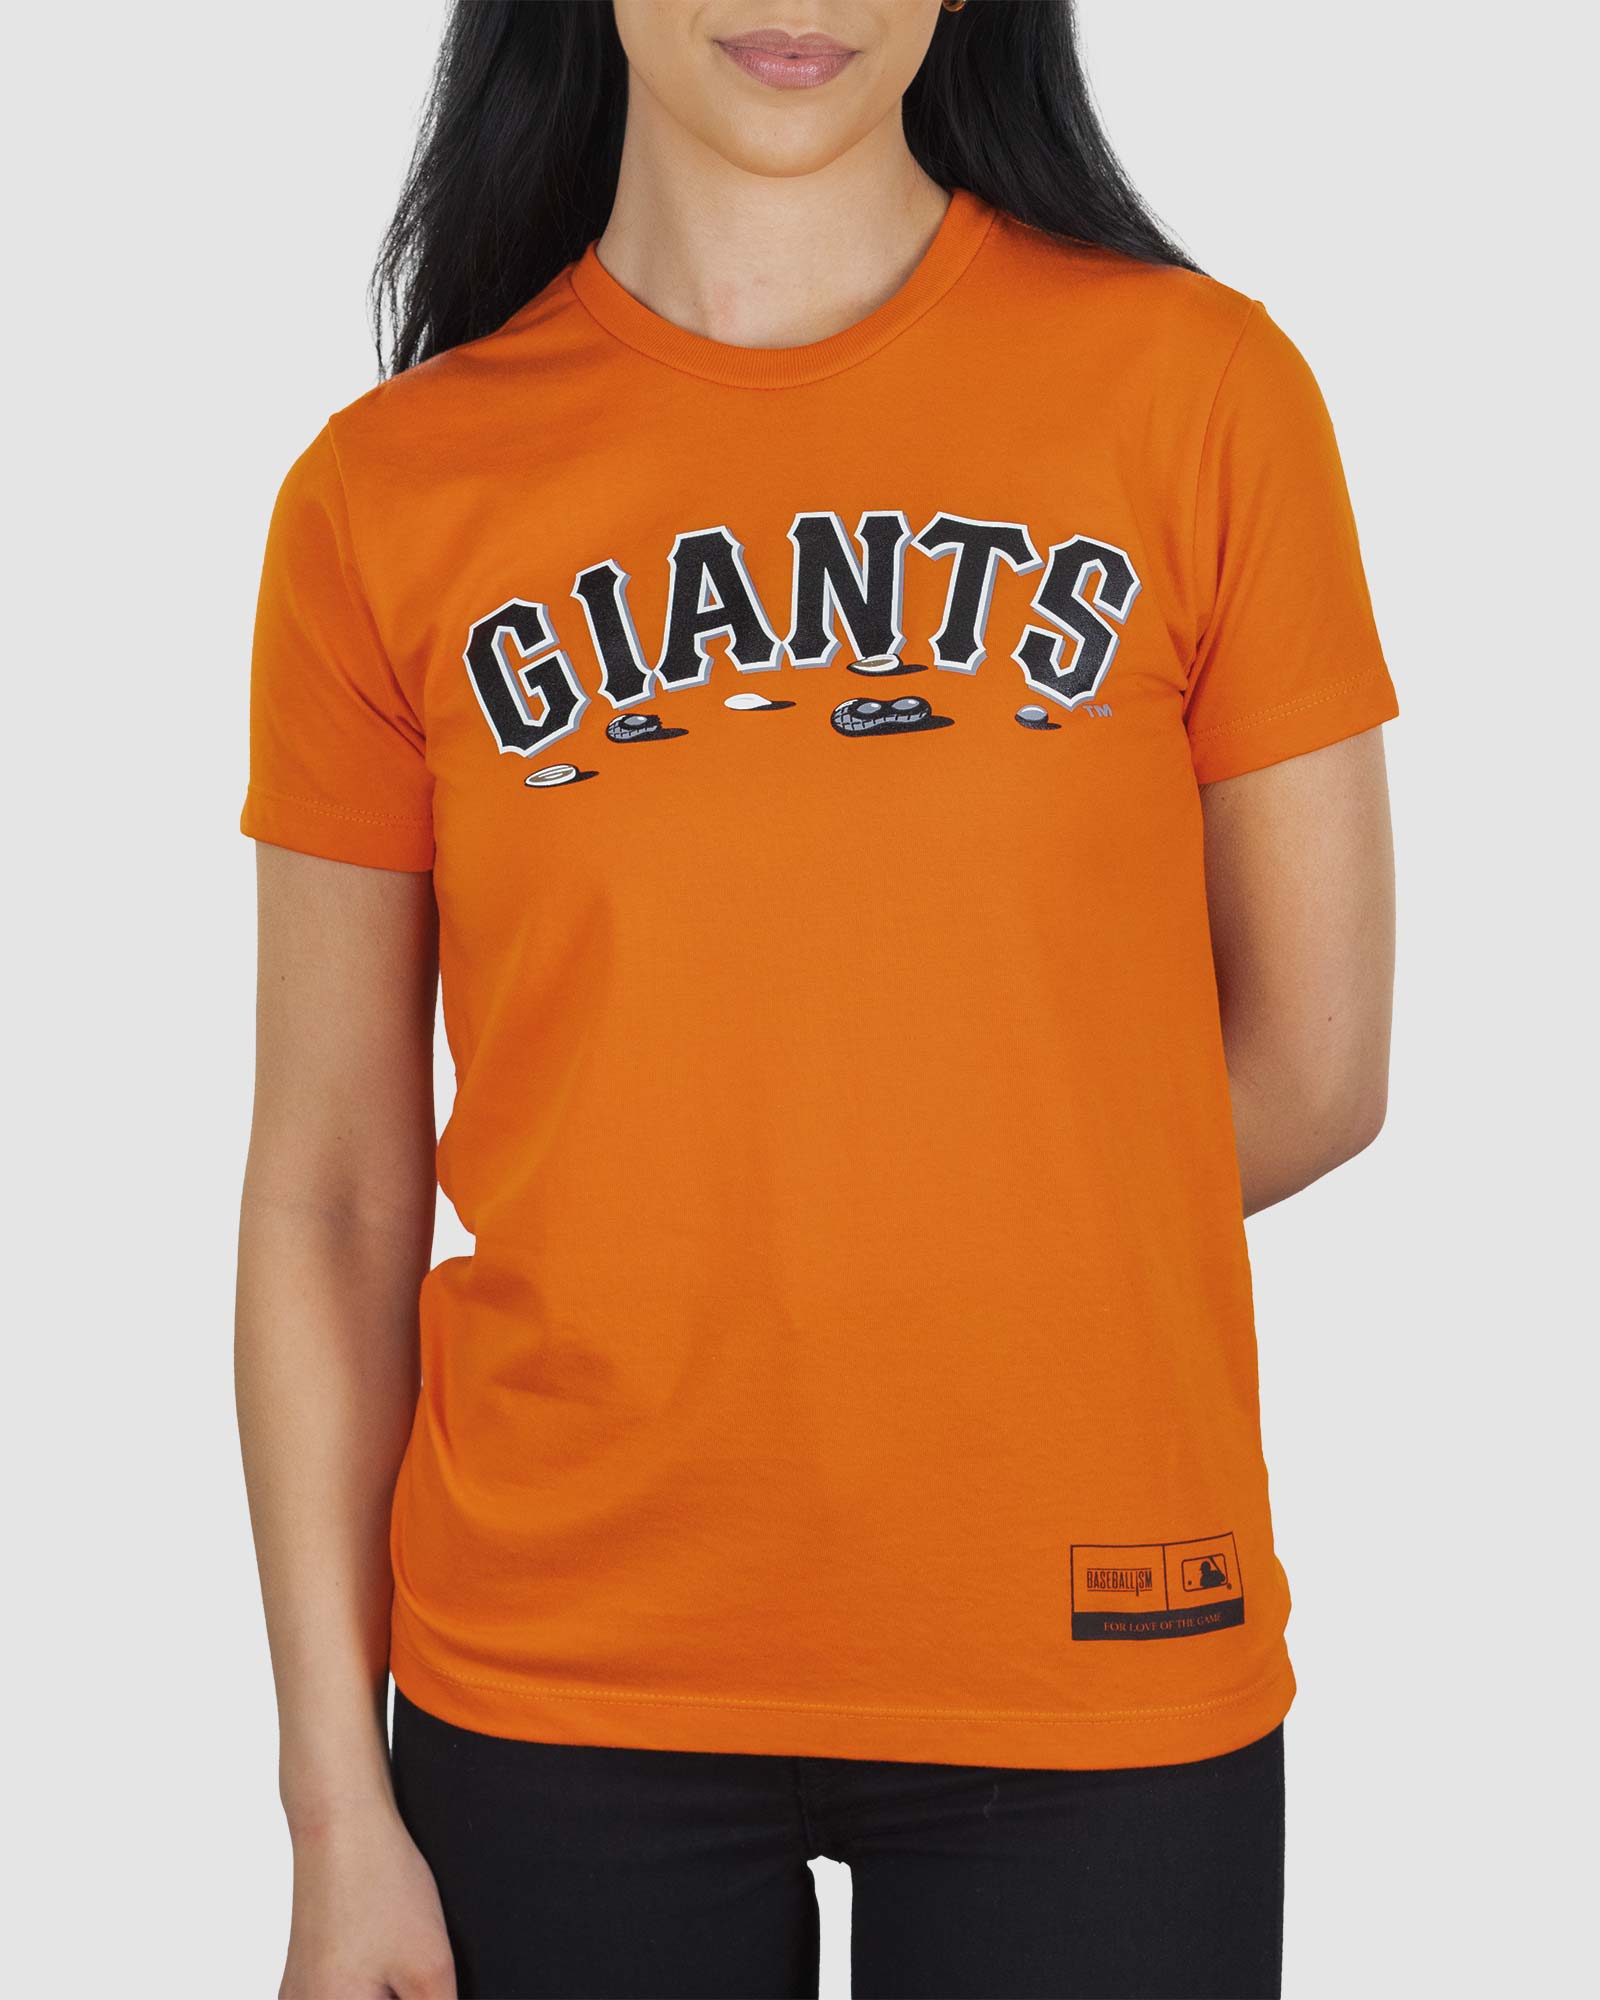 Snoopy Charlie Brown Giants Baseball MLB Shirt